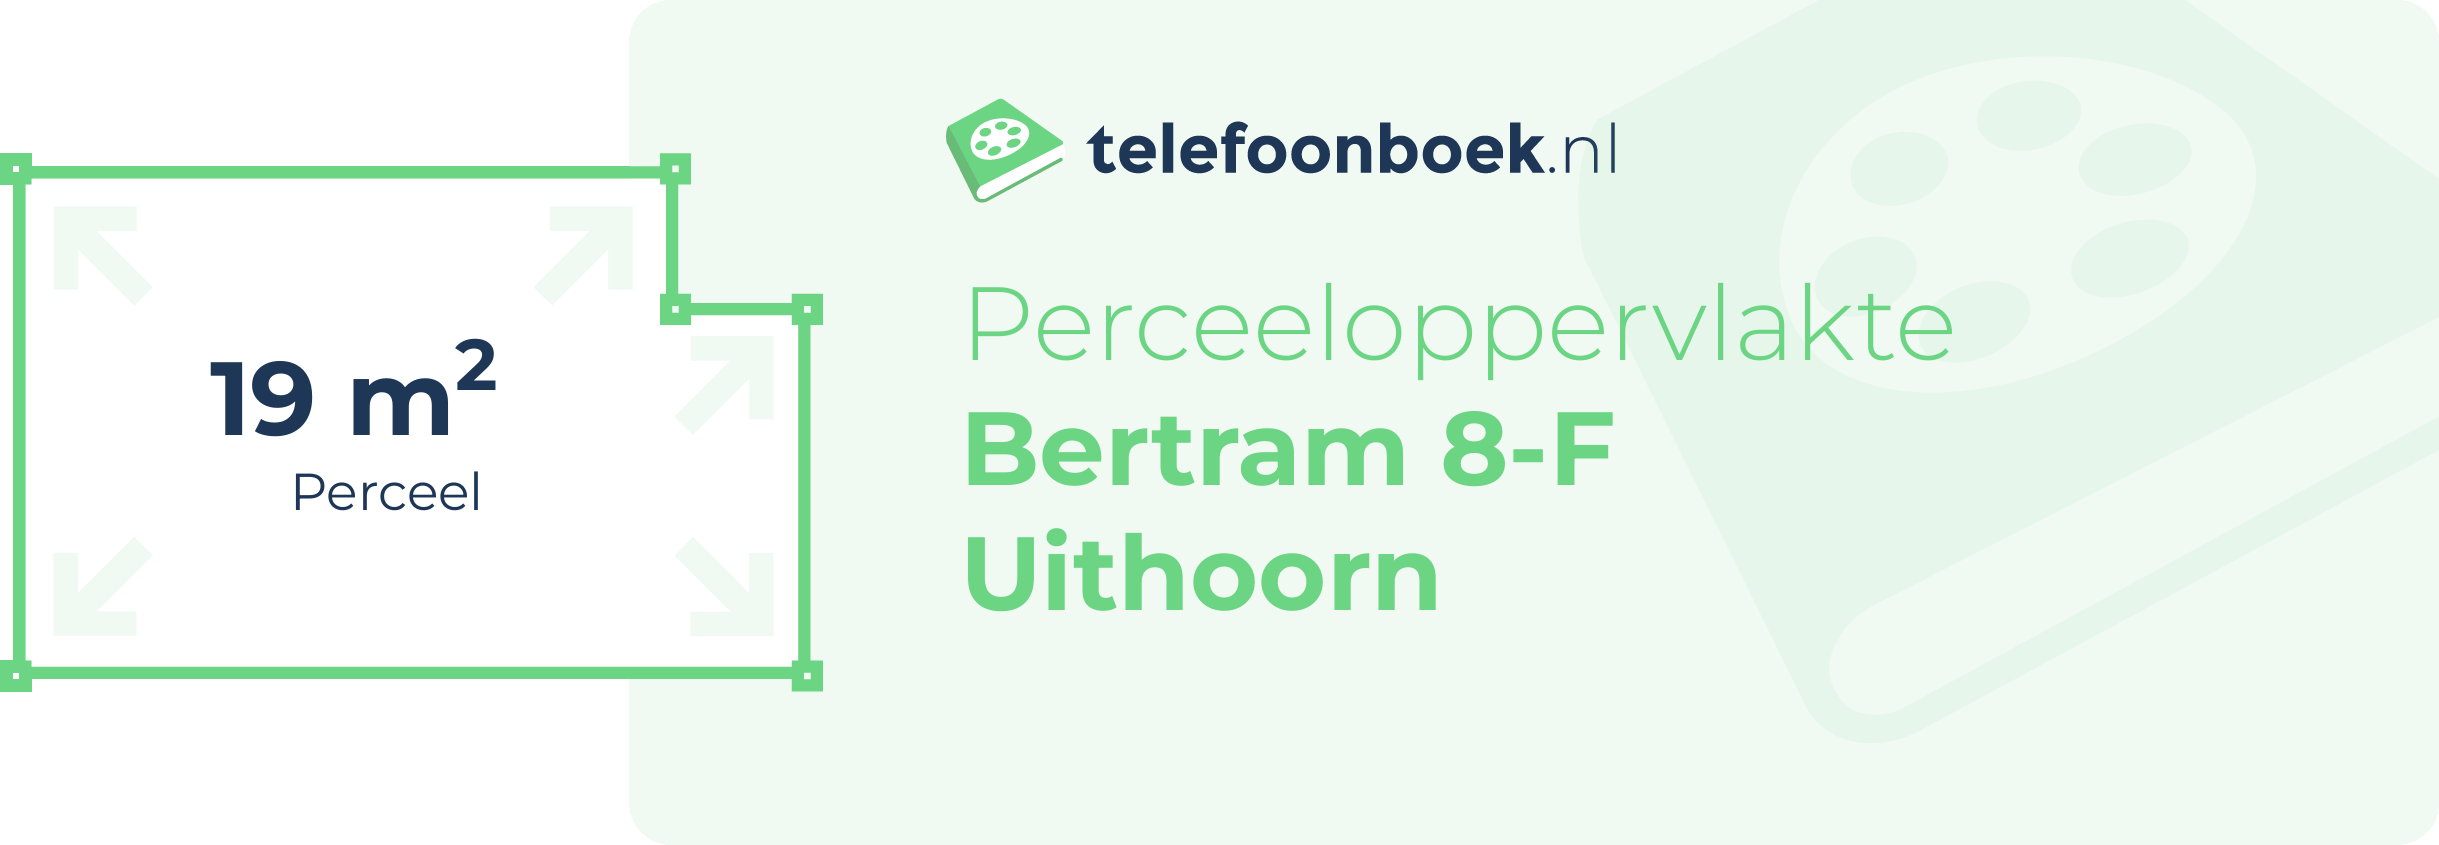 Perceeloppervlakte Bertram 8-F Uithoorn